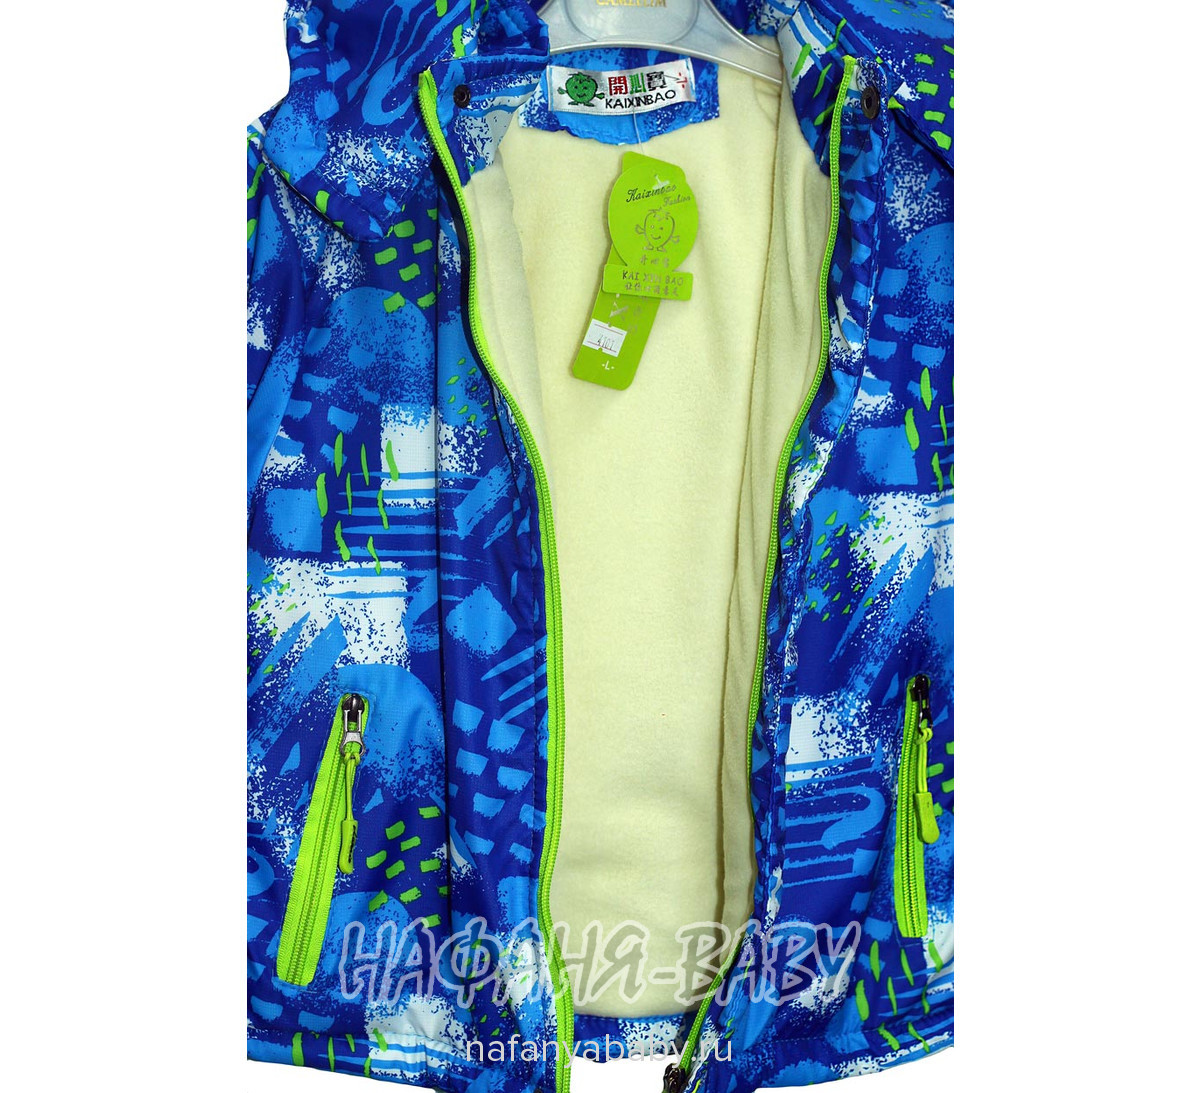 Детская куртка K.X.B., купить в интернет магазине Нафаня. арт: 4101.